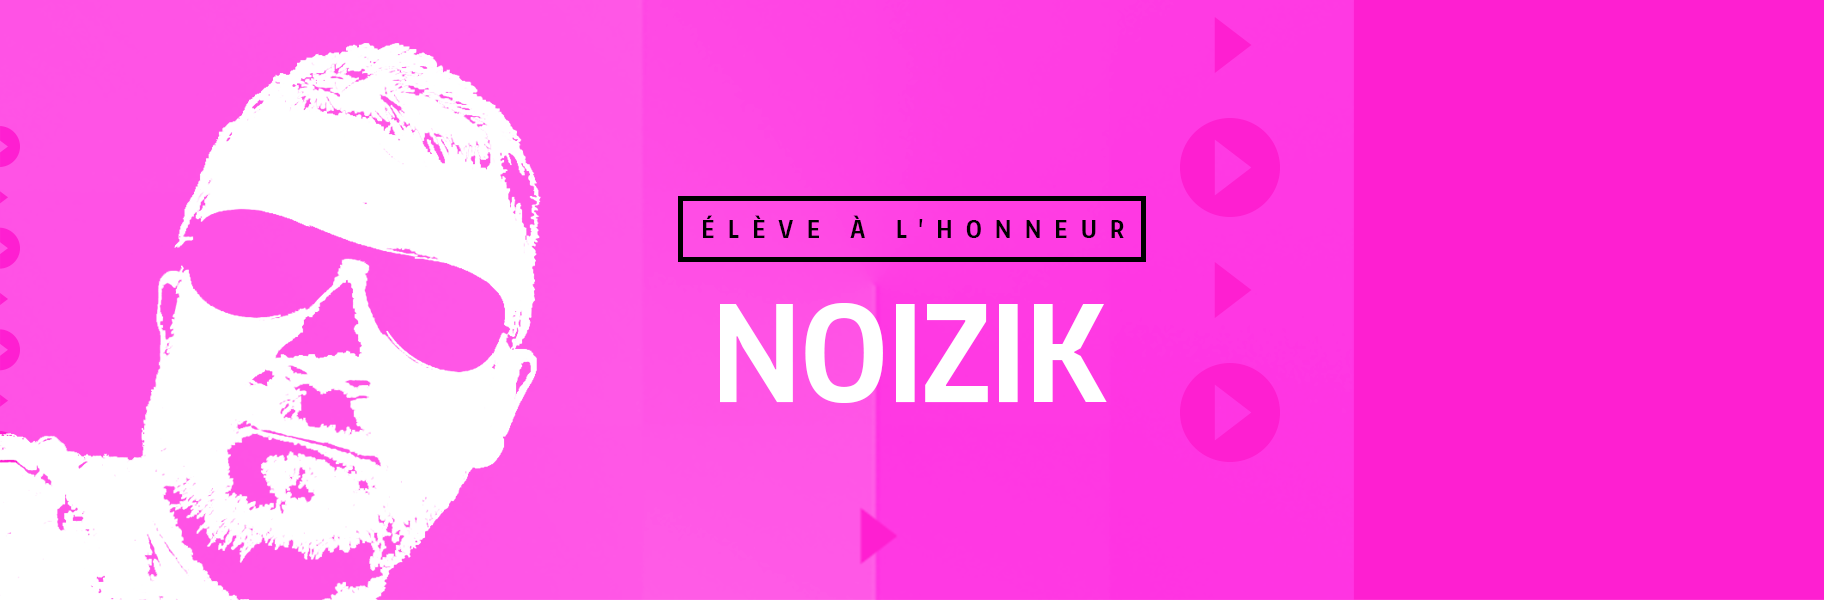 Élève à l'honneur - NOIZIK